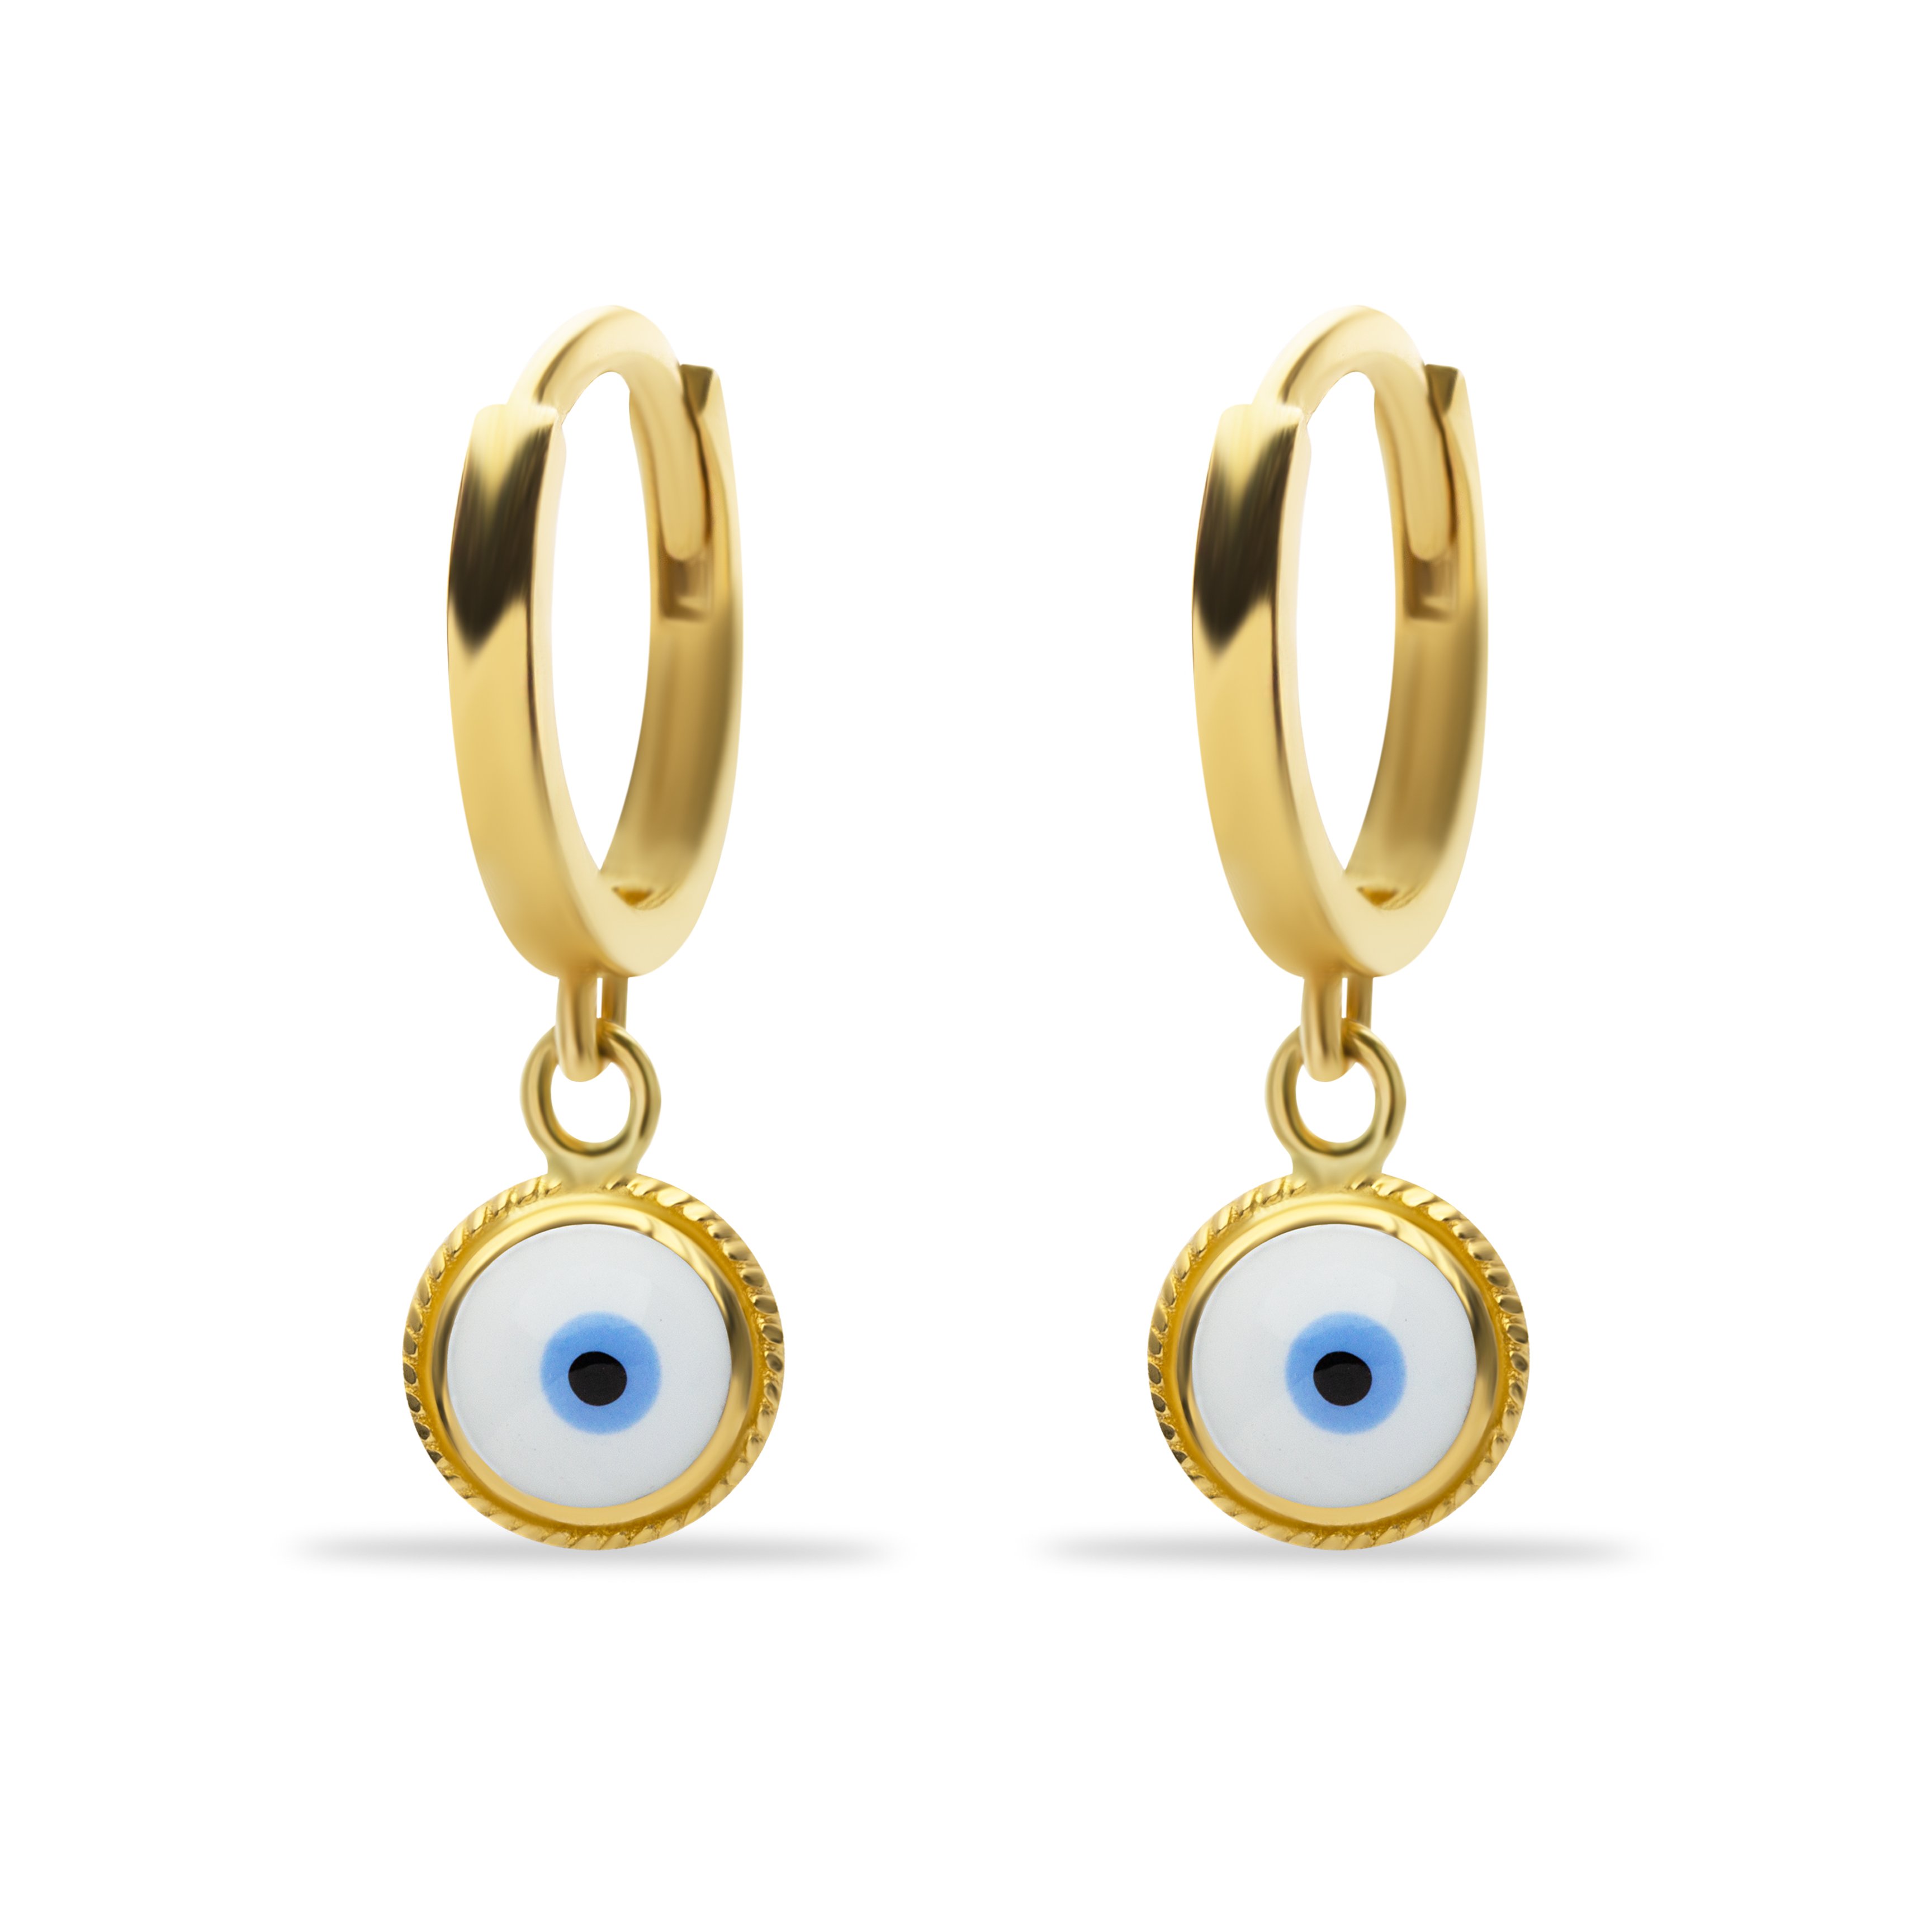 14 Carat Gold White Enamel Eye Earrings